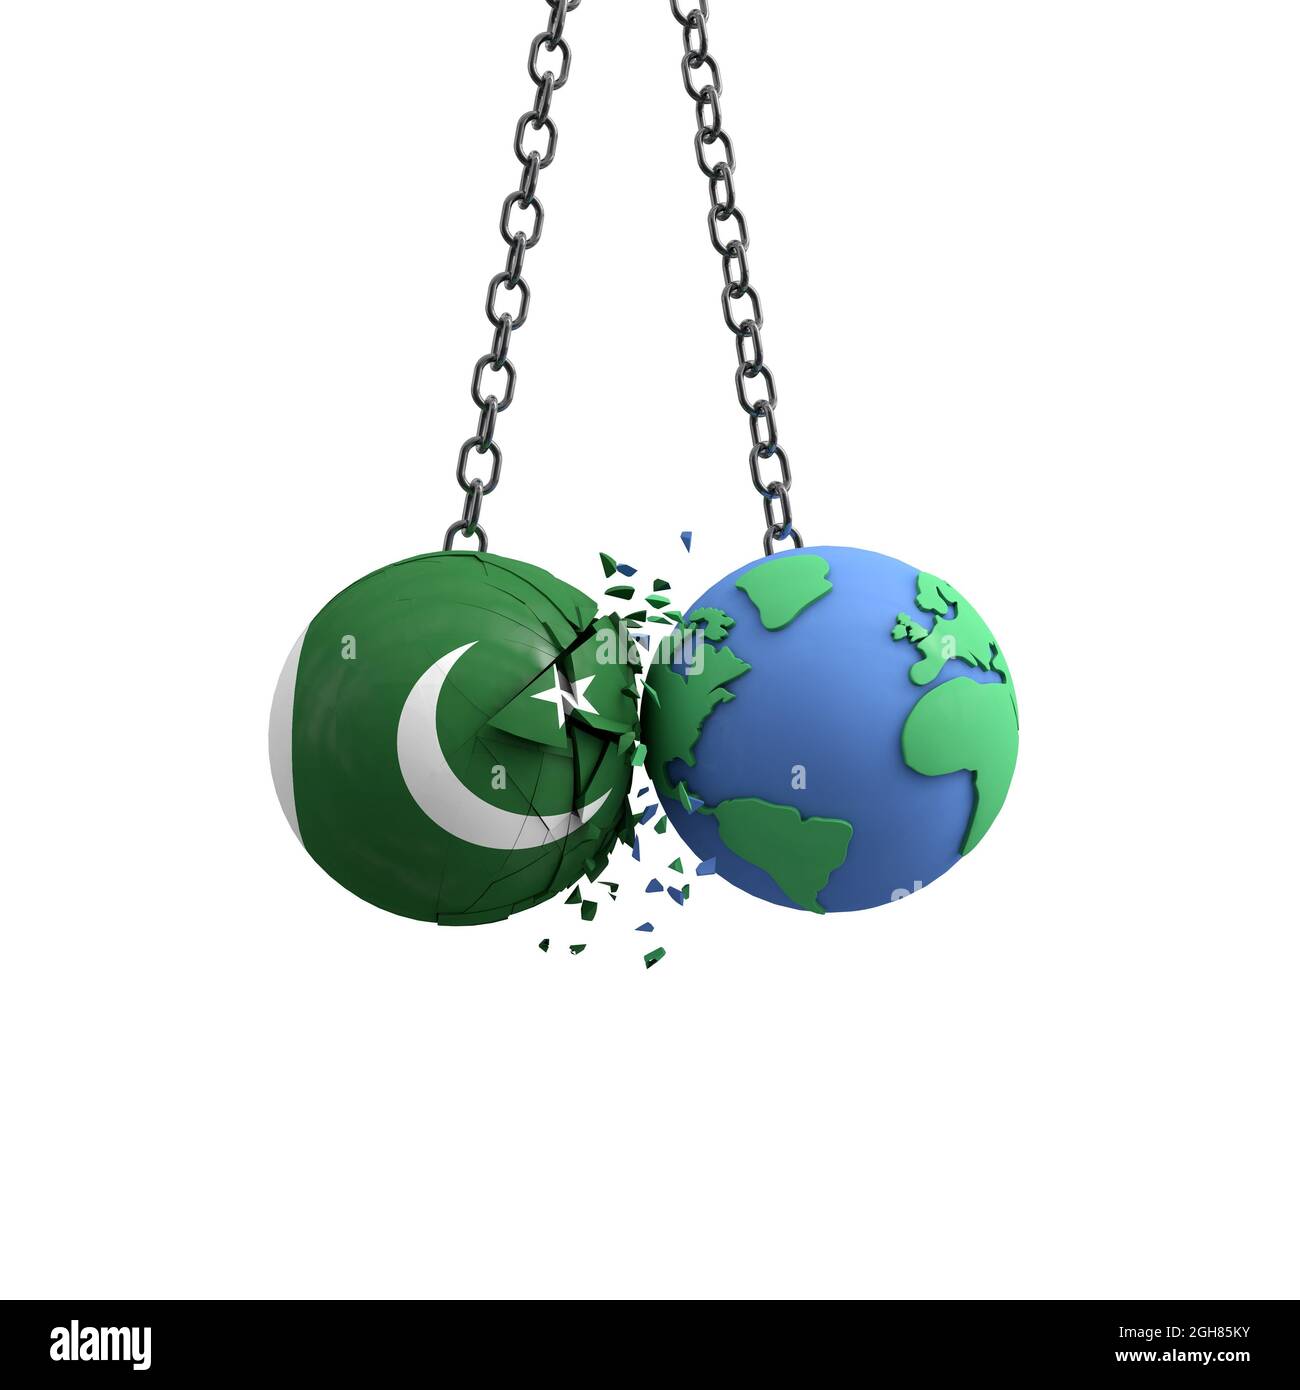 Le drapeau du Pakistan frappe la planète terre. Concept d'impact sur l'environnement. Rendu 3D Banque D'Images